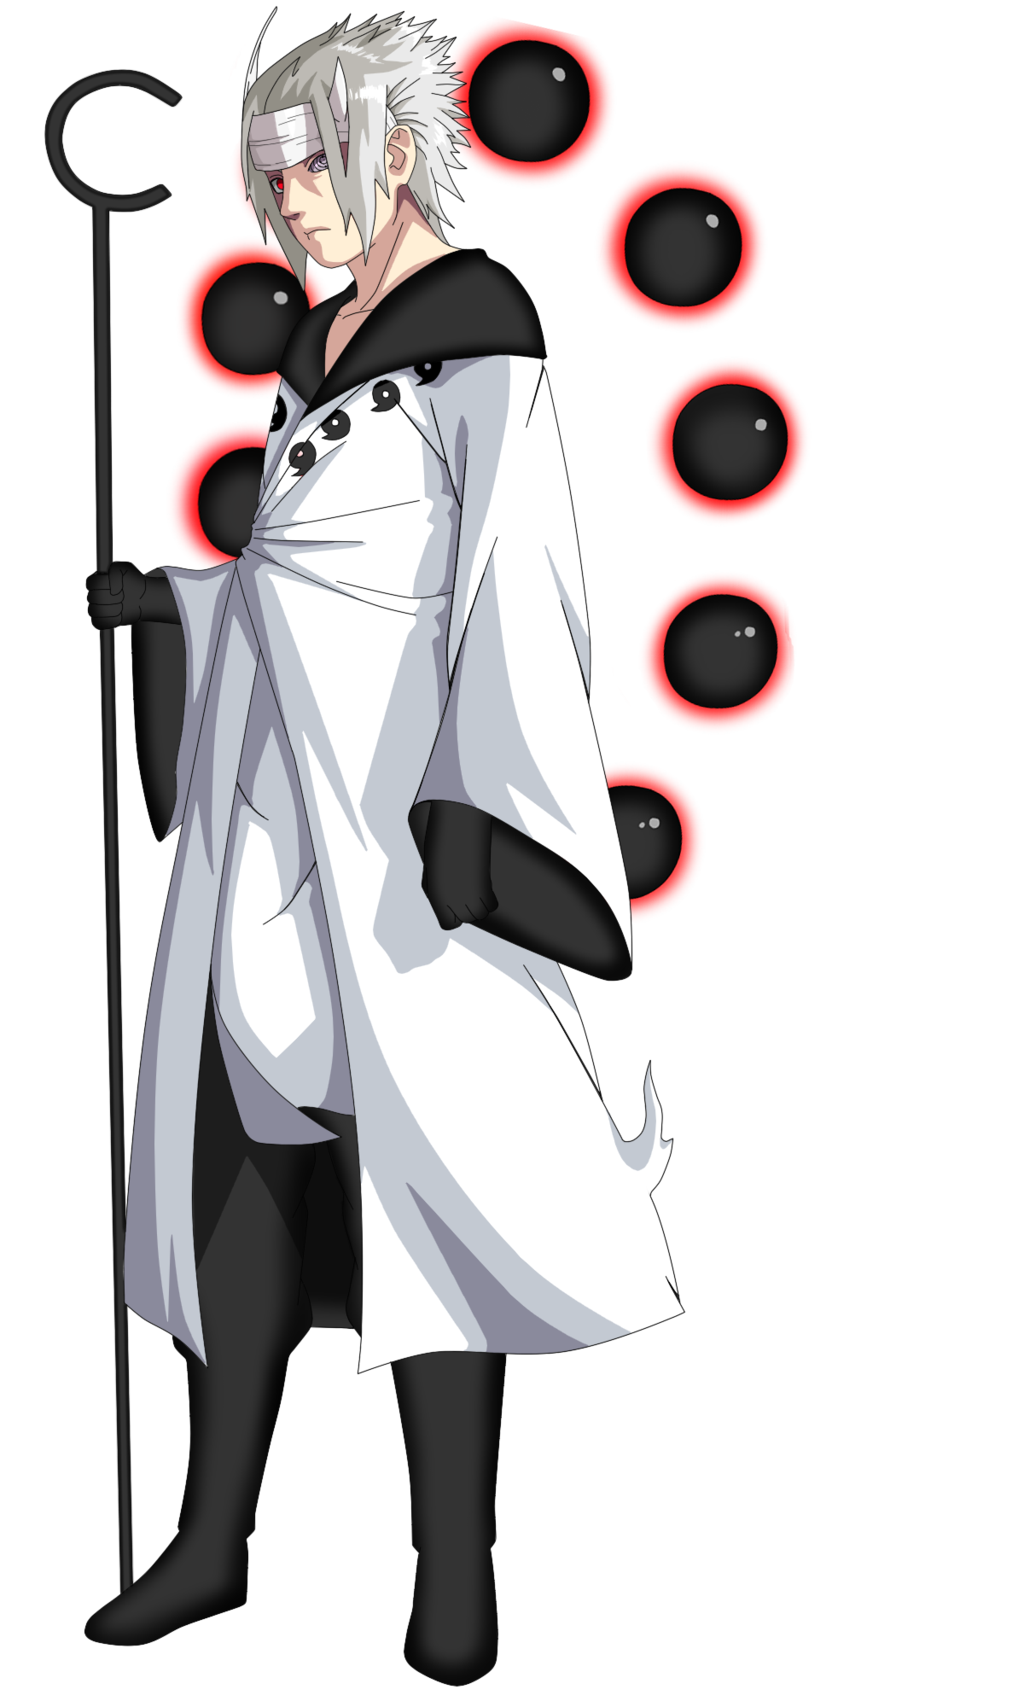 Sasuke Uchiha awakened his Mangekyou Sharingan at the age of 16 Itachi  Uchiha awakened his Mangekyou Sharingan at the age of 12 Shisui Uchiha  awakened his Mangekyou Sharingan at the age of 7 - iFunny